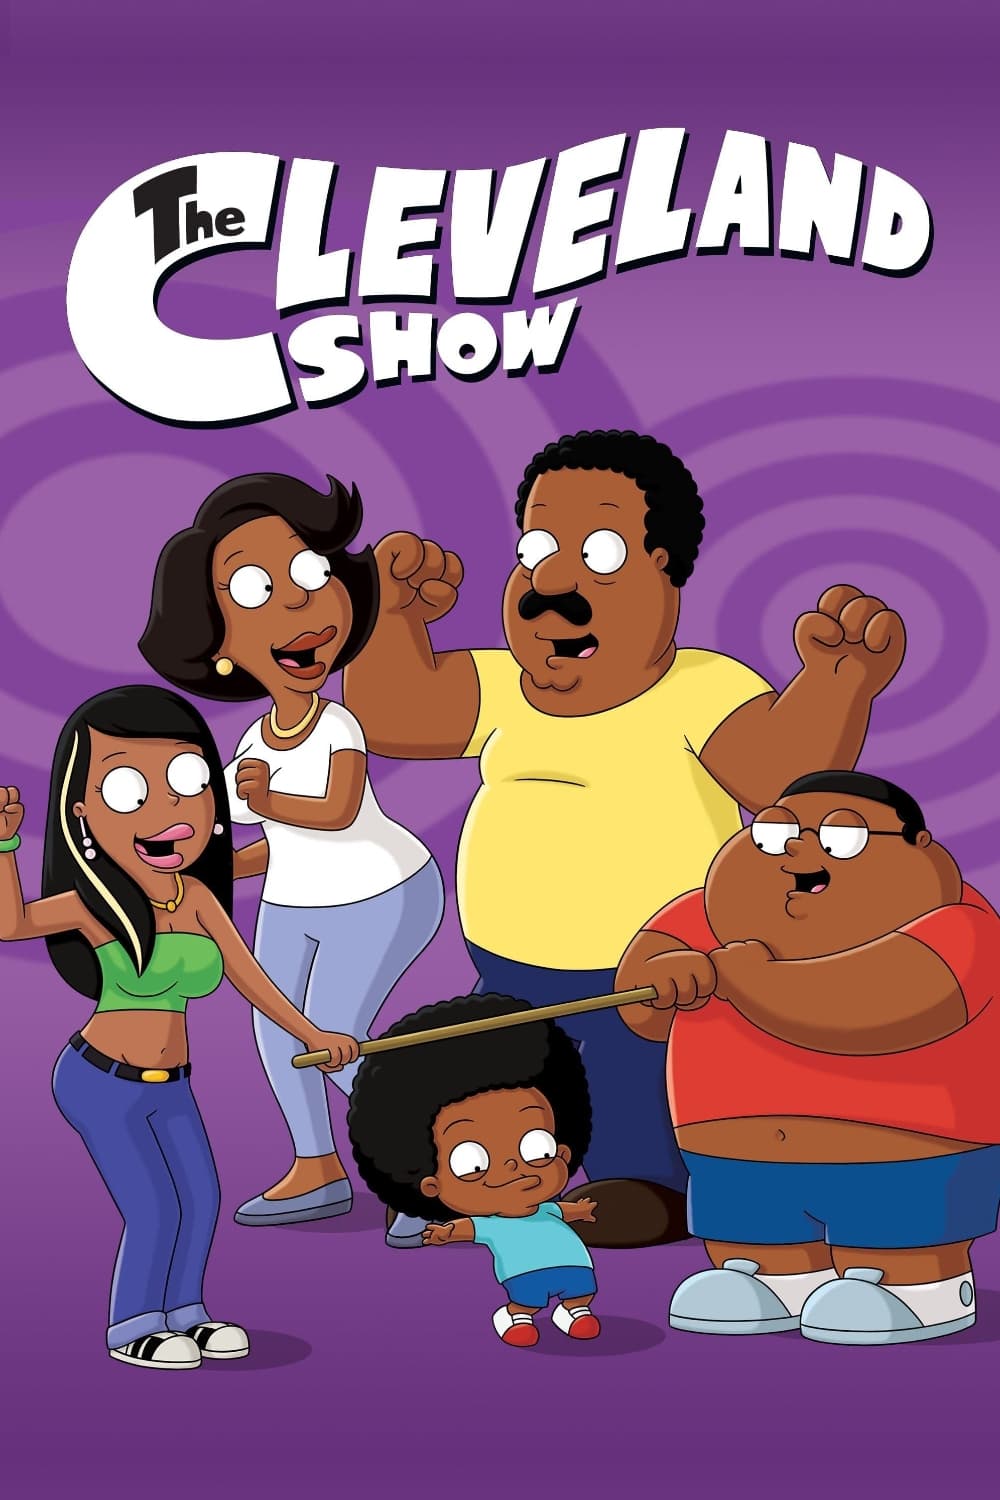 El show de Cleveland (2009)